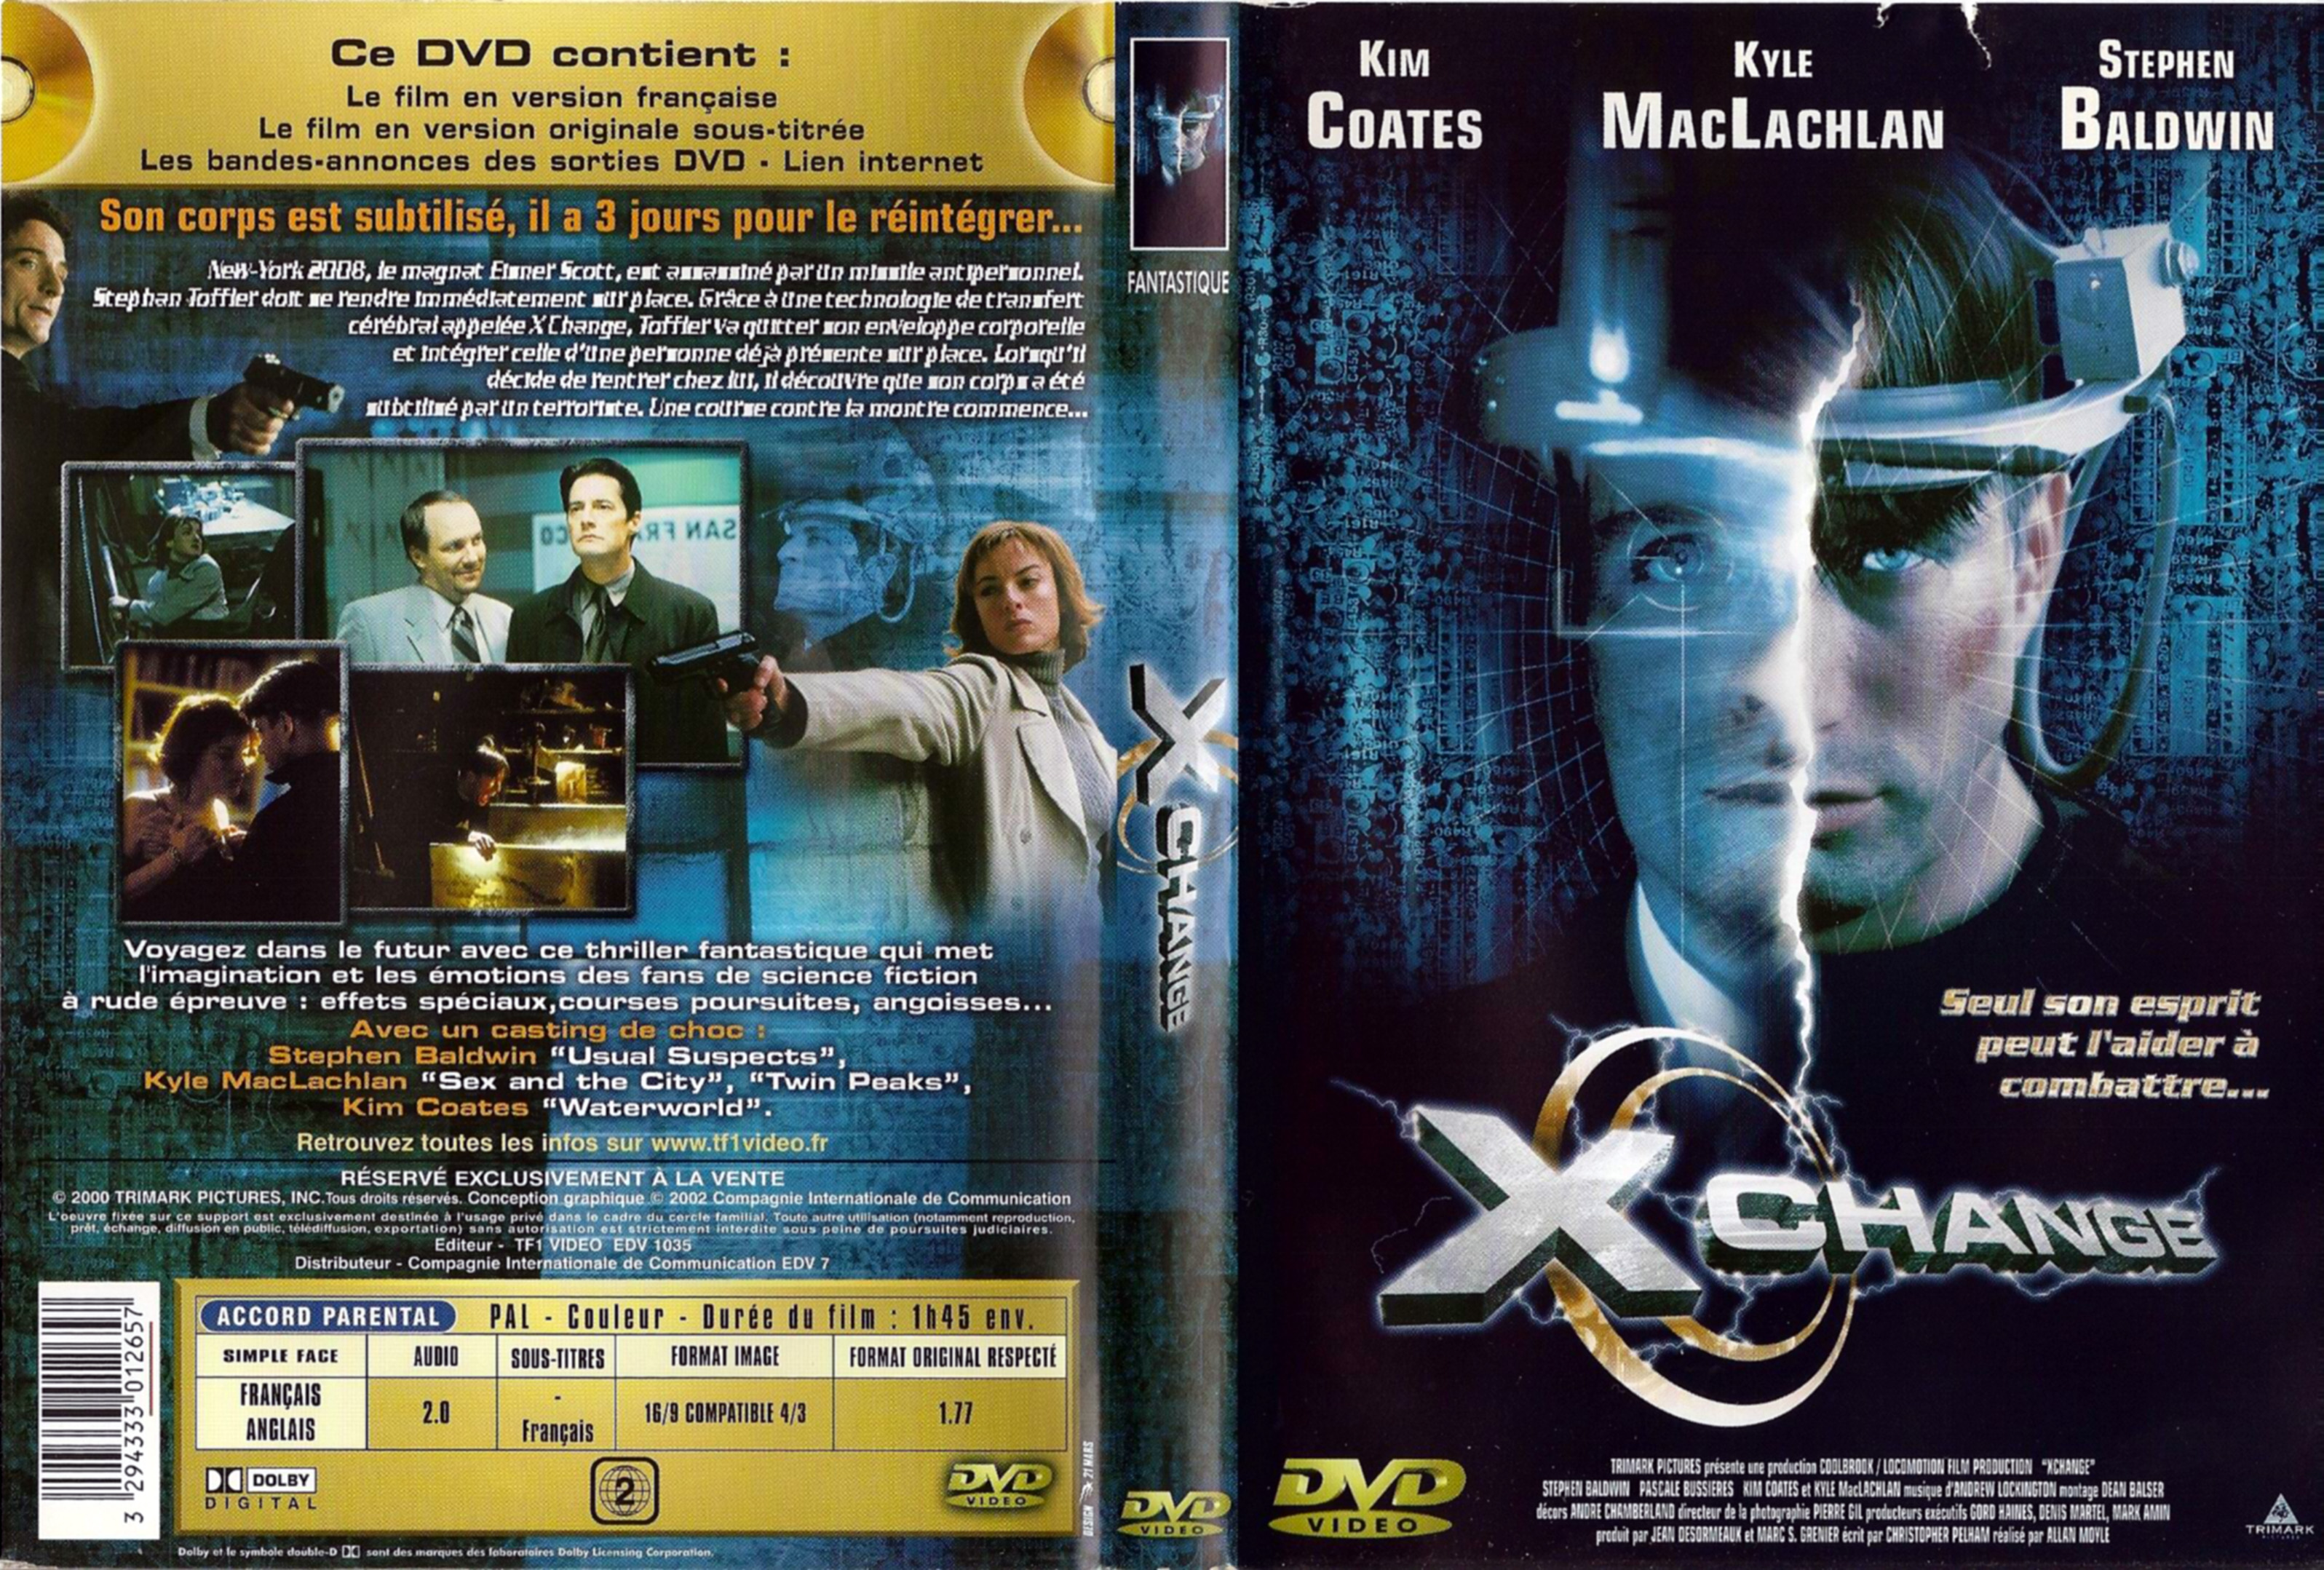 Jaquette DVD Xchange v2